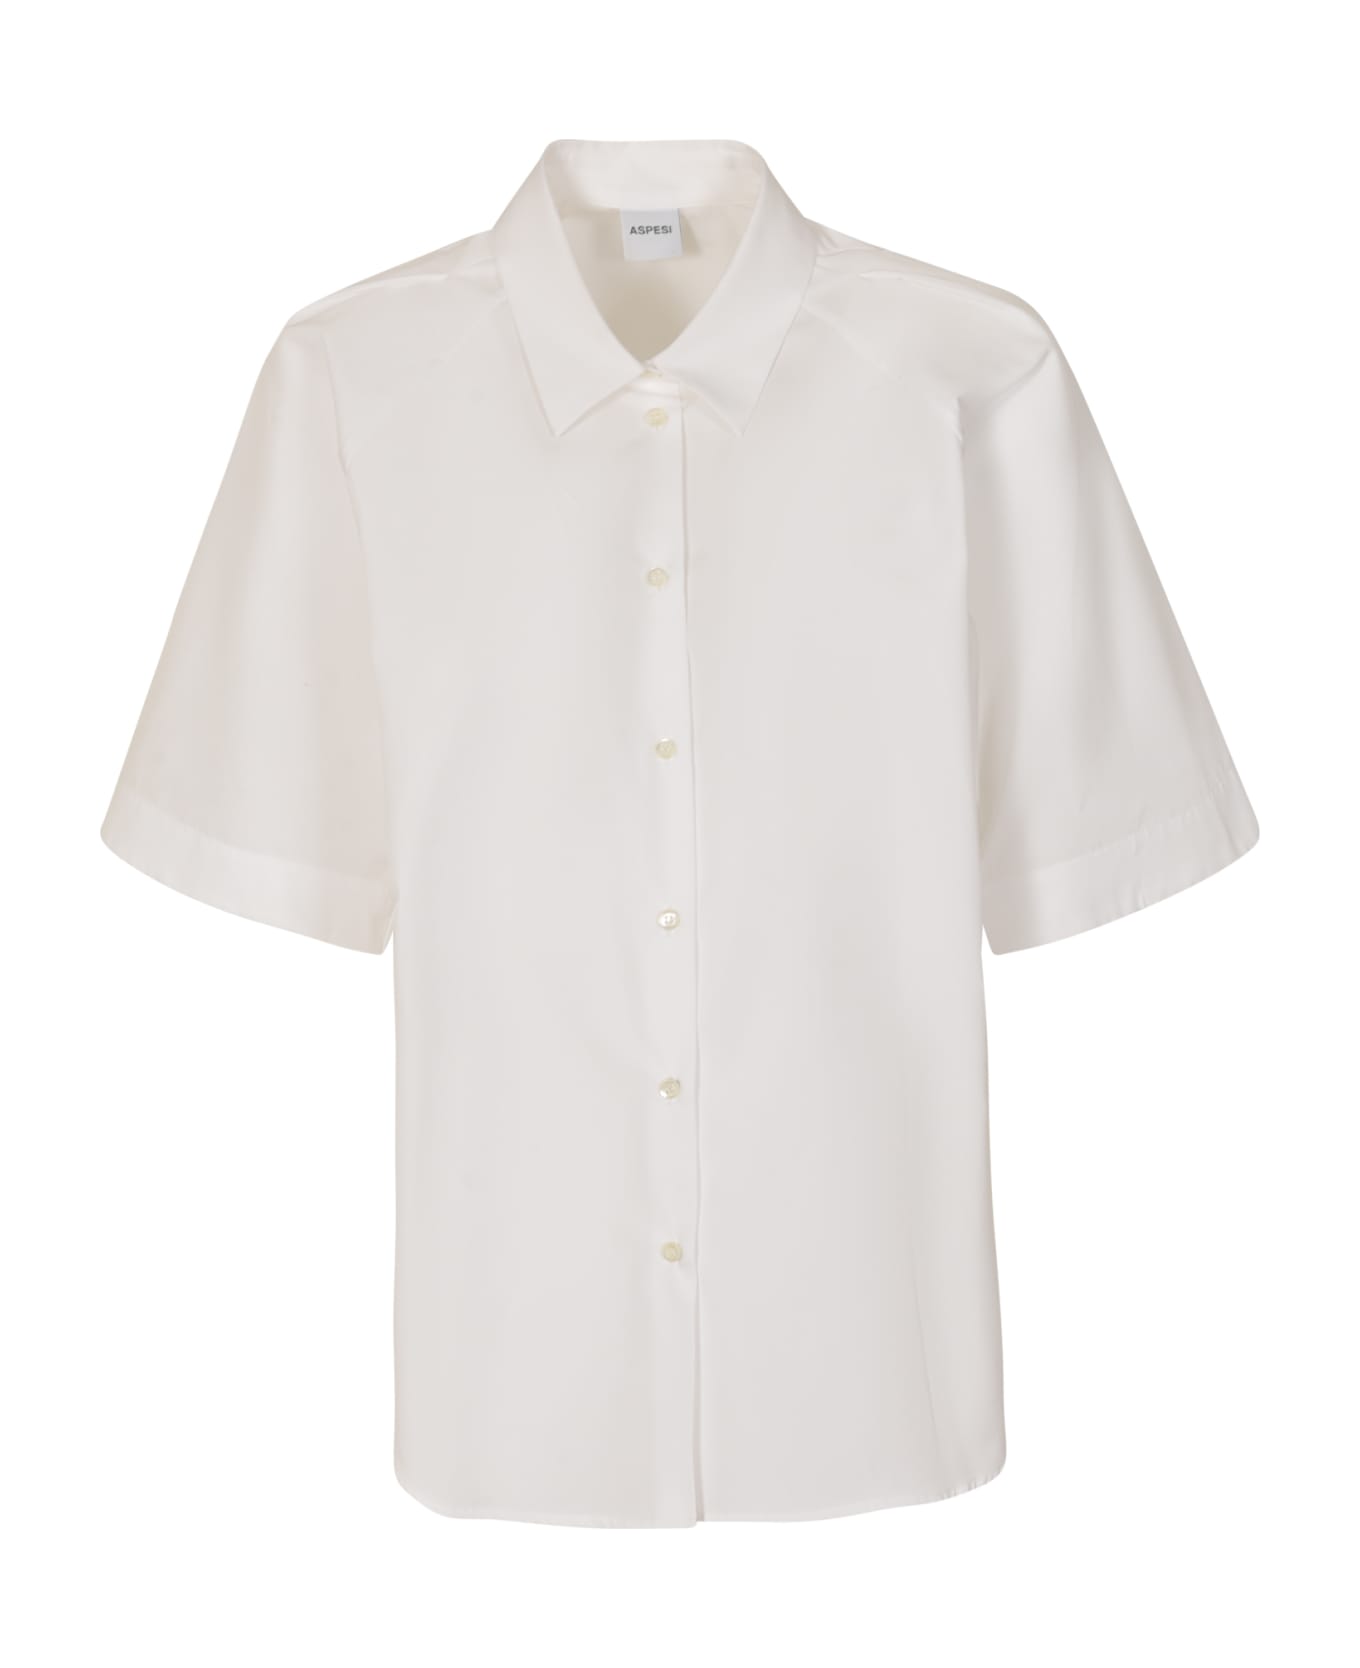 Aspesi Short-sleeved Plain Shirt - Bianco シャツ